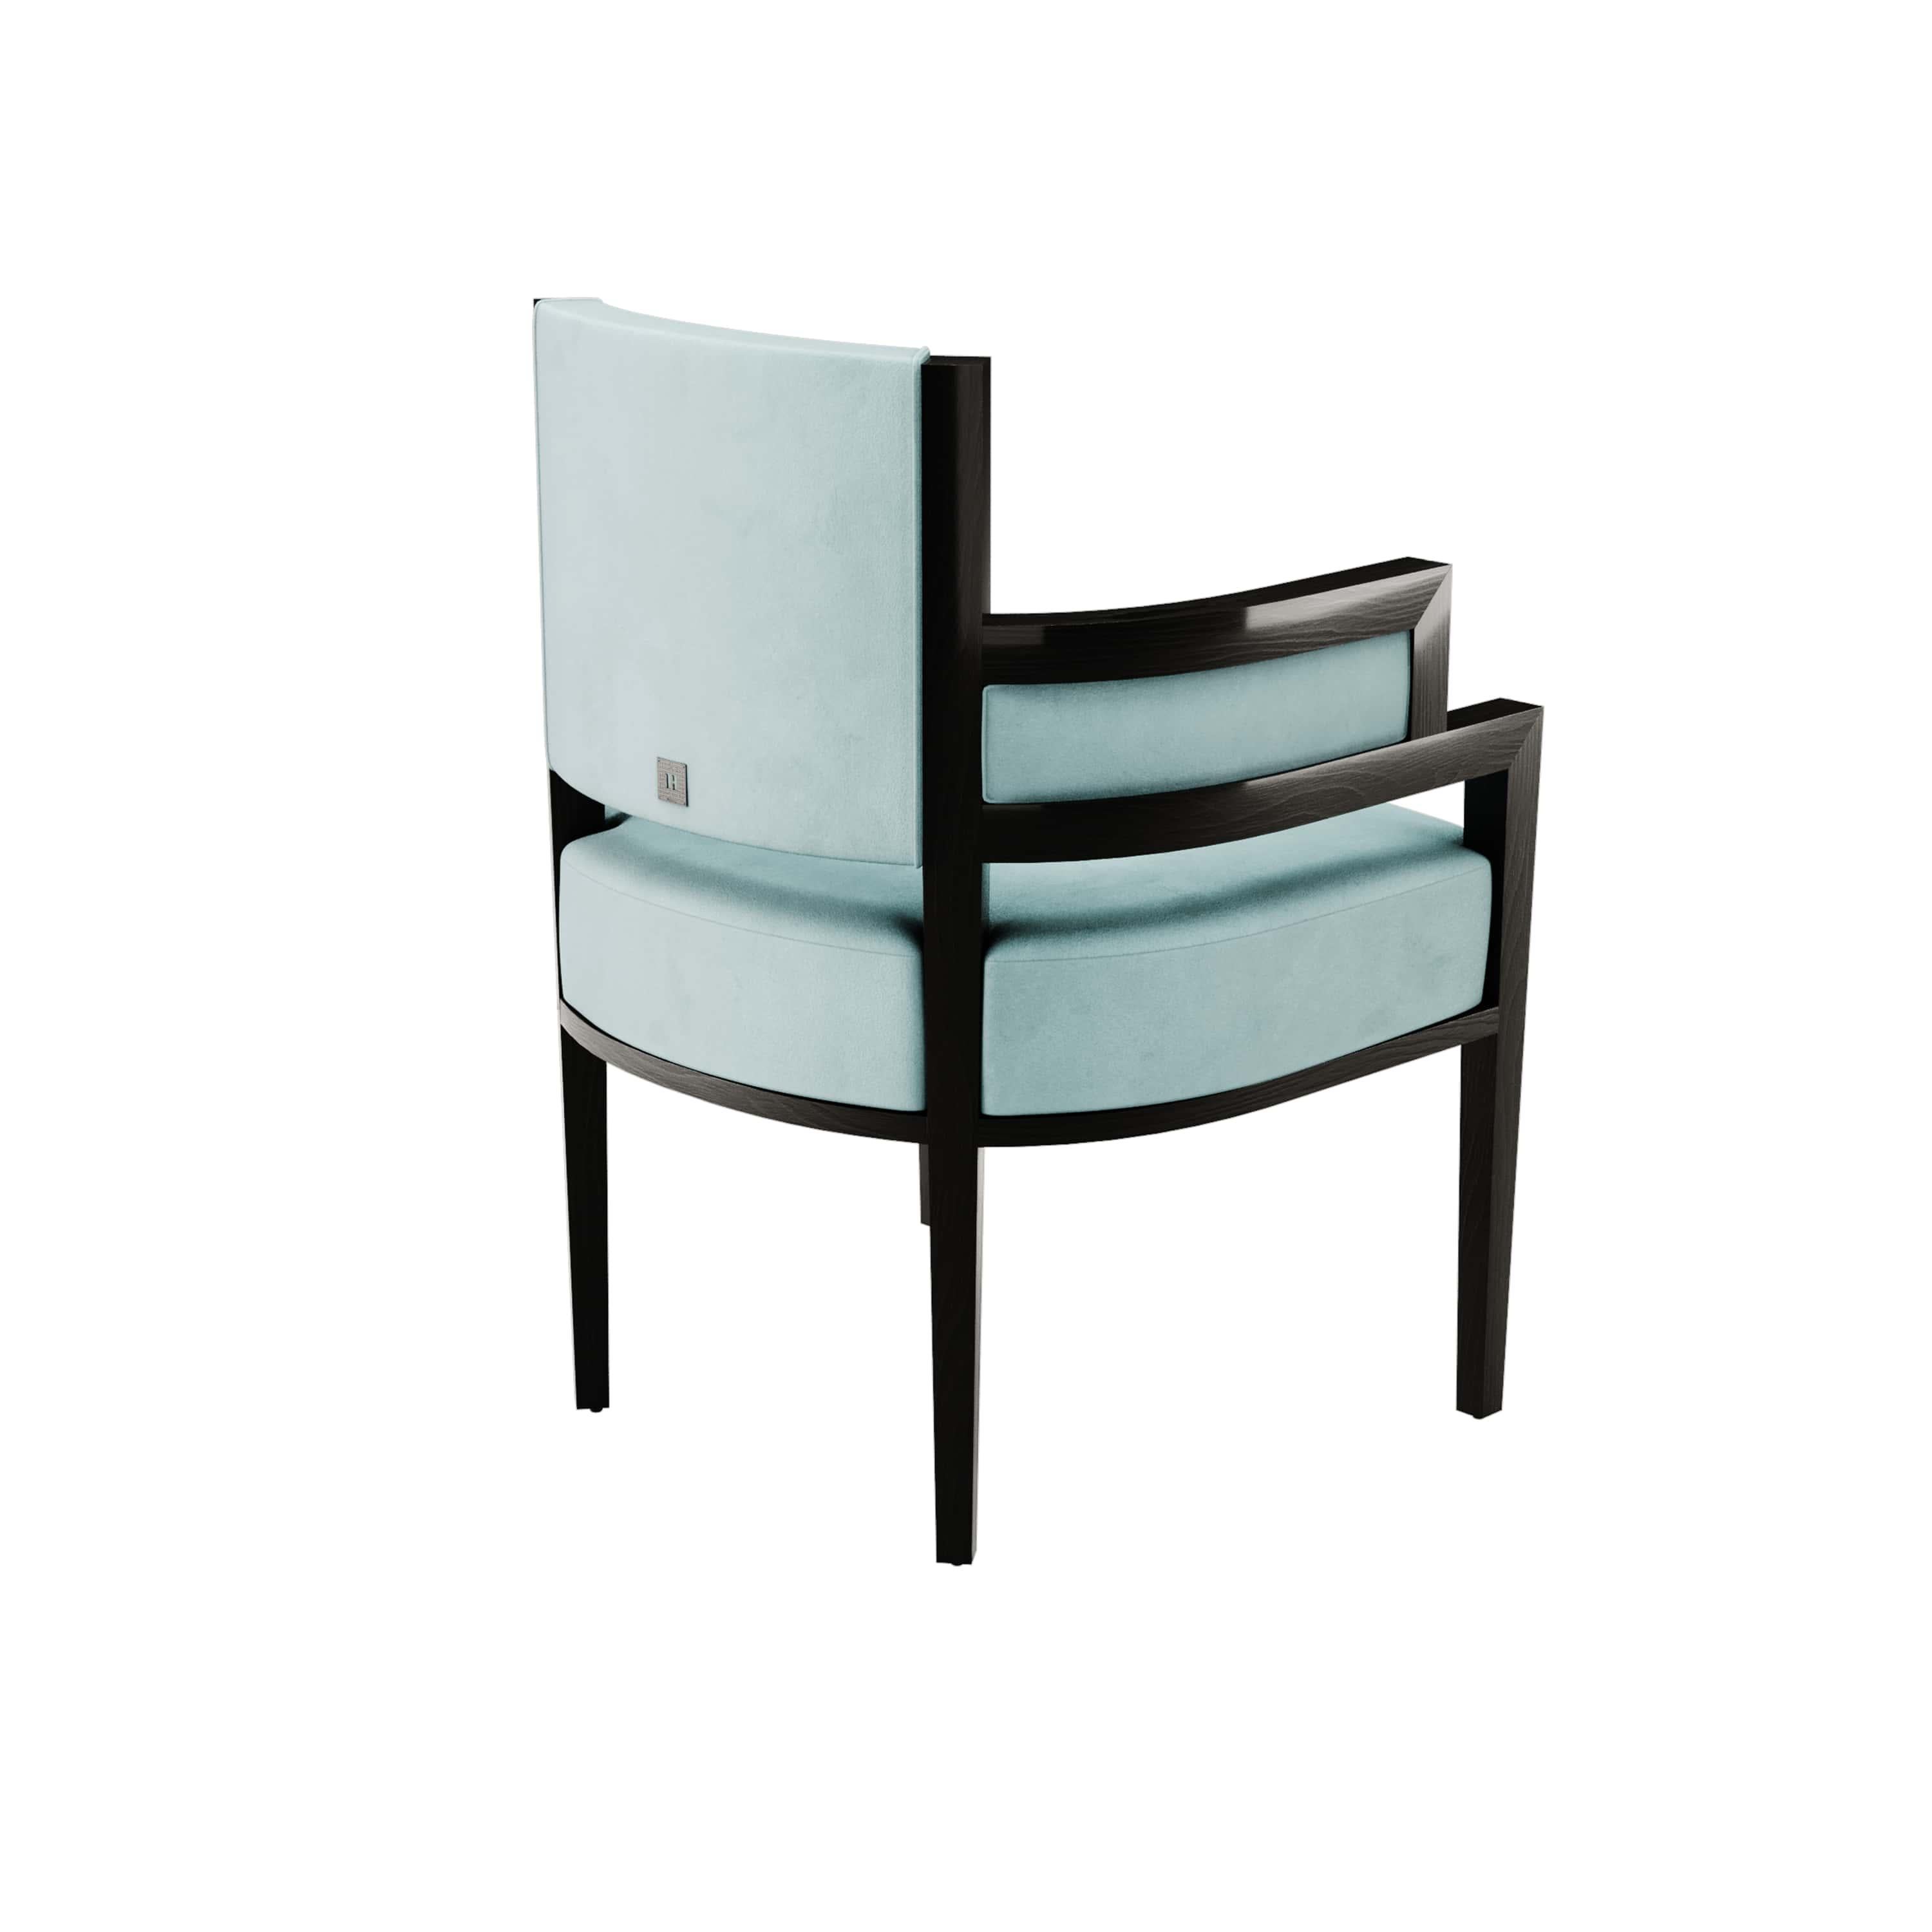 Portuguese Art Deco Style Light Blue Velvet Upholstery Chair Dining Room Chair For Sale